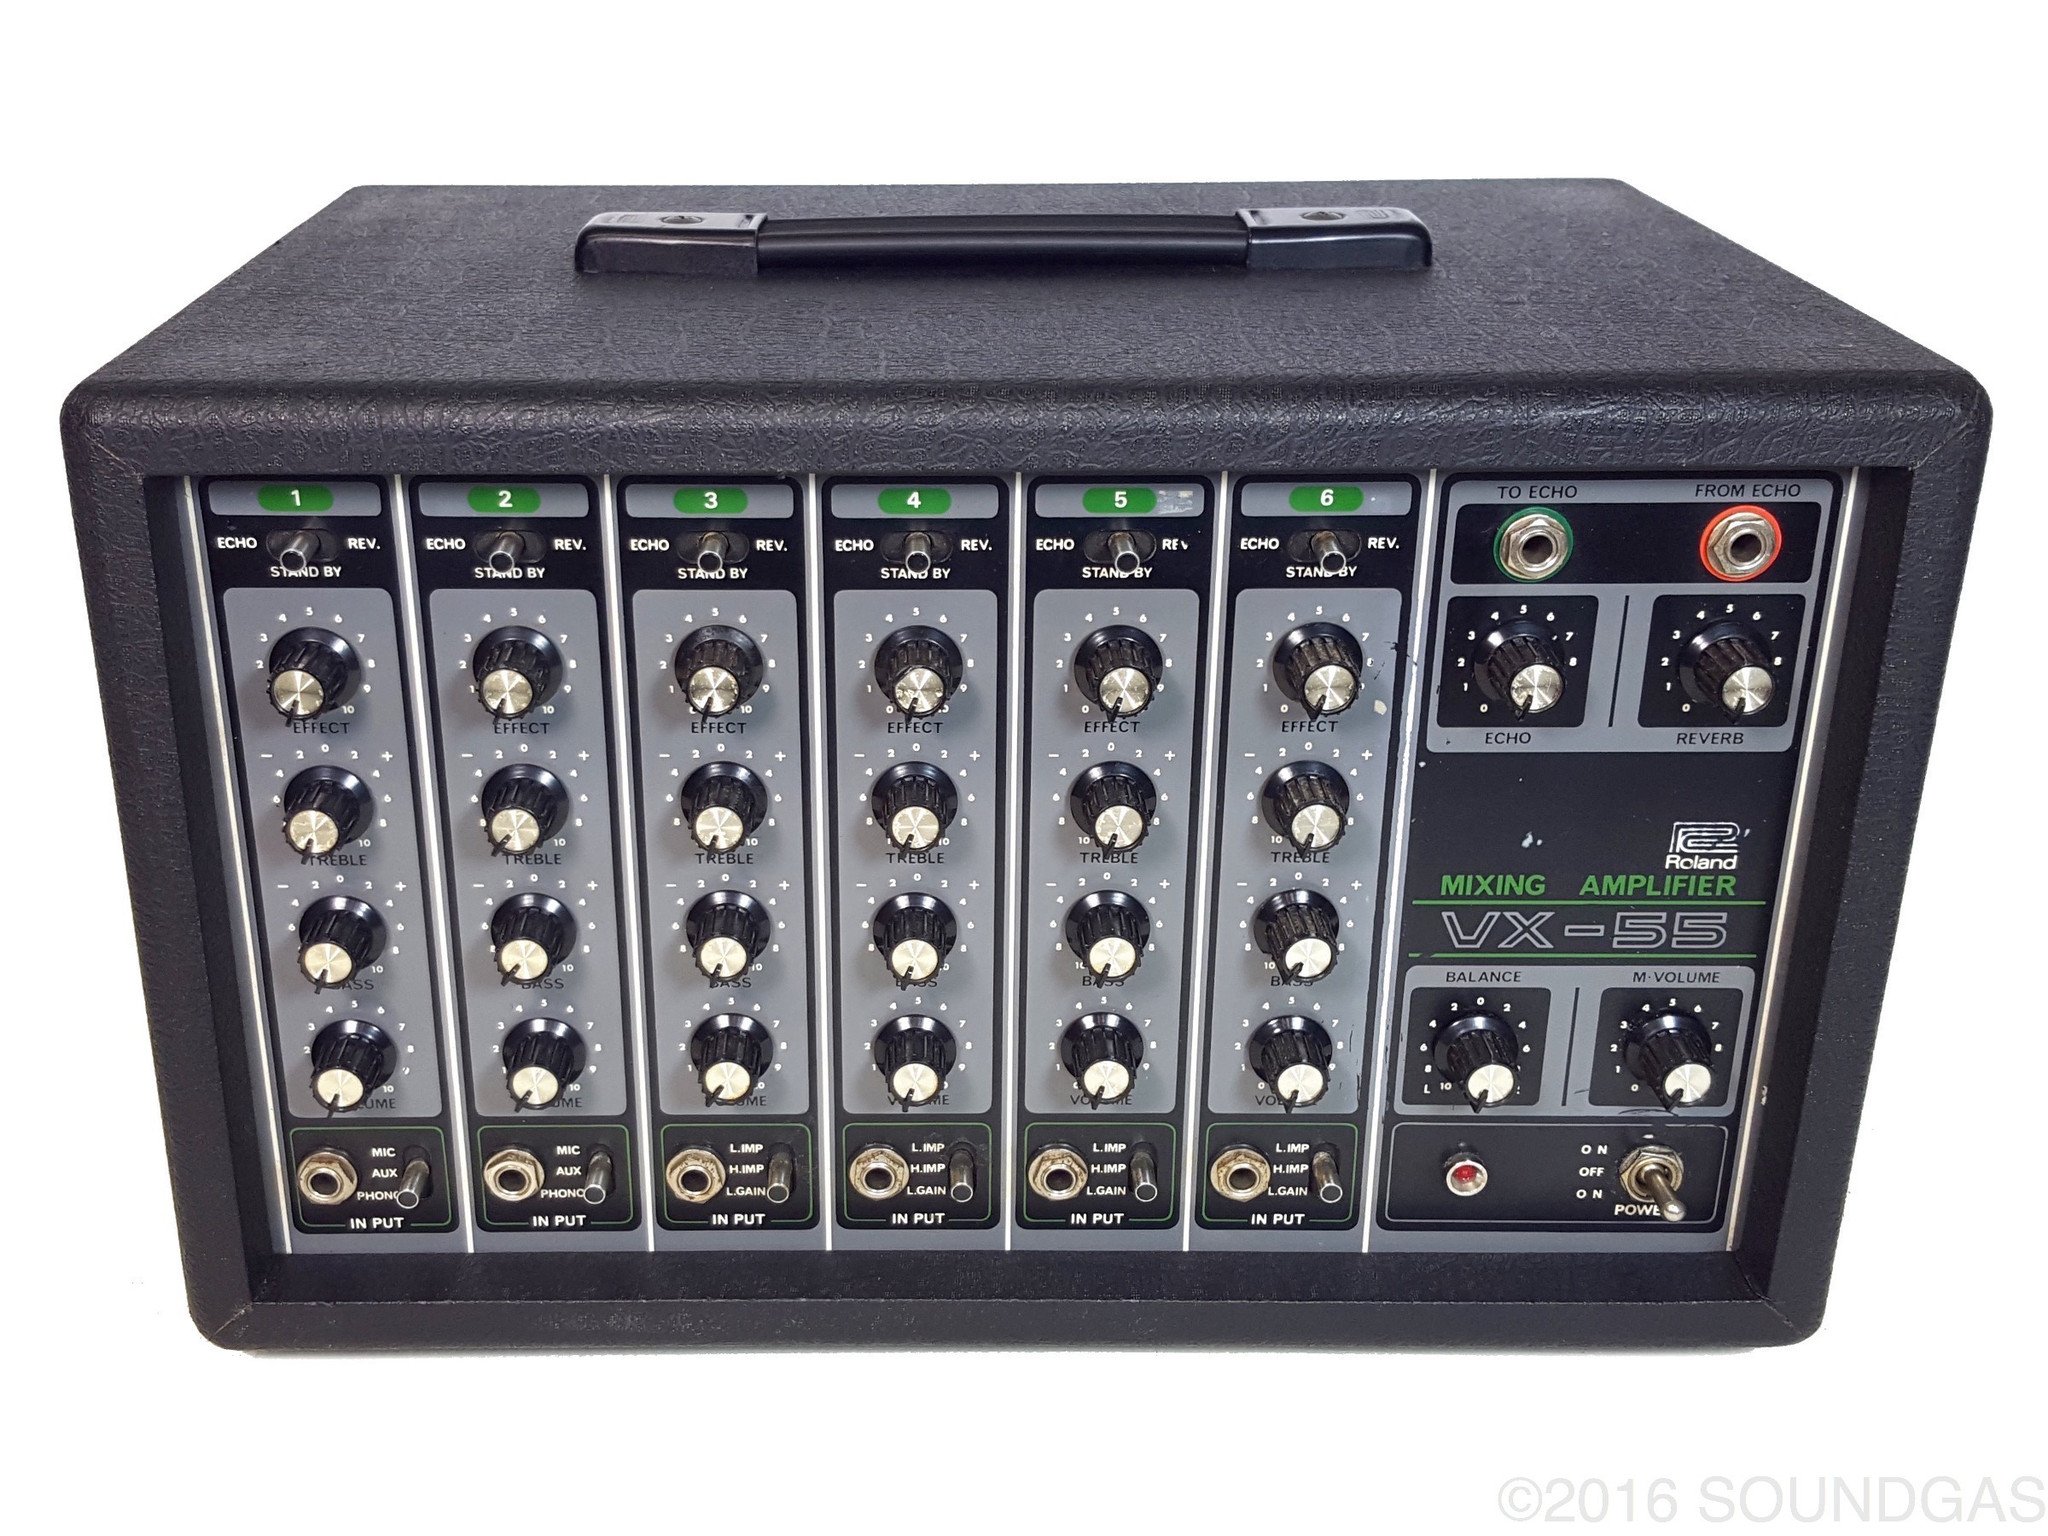 Roland VX-55 Mixing Amplifier